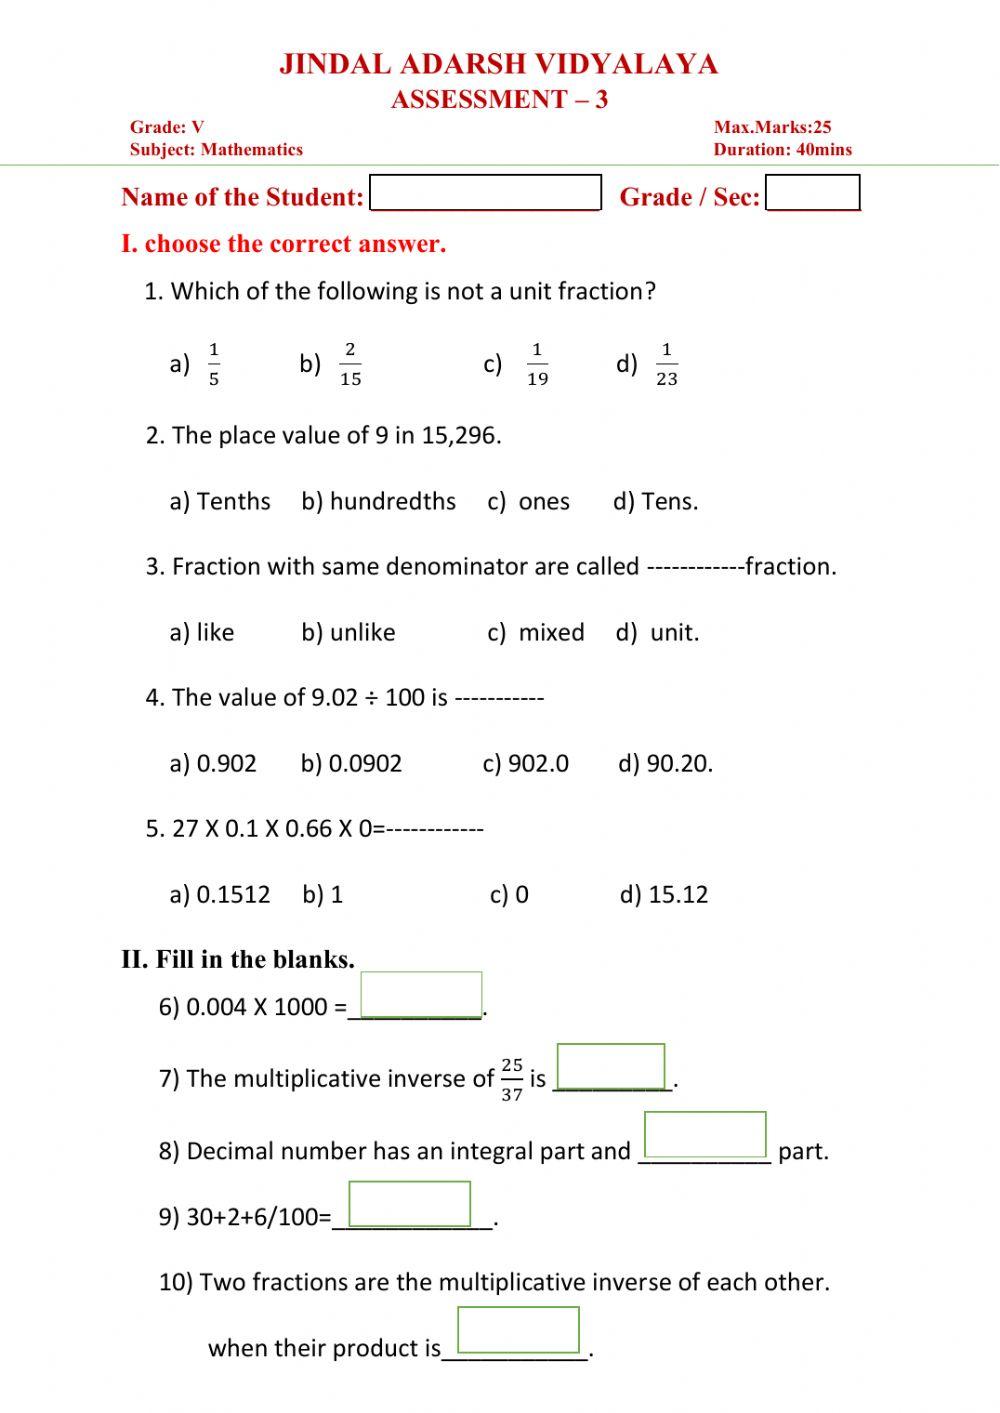 Grade 5 Maths Assessment 3